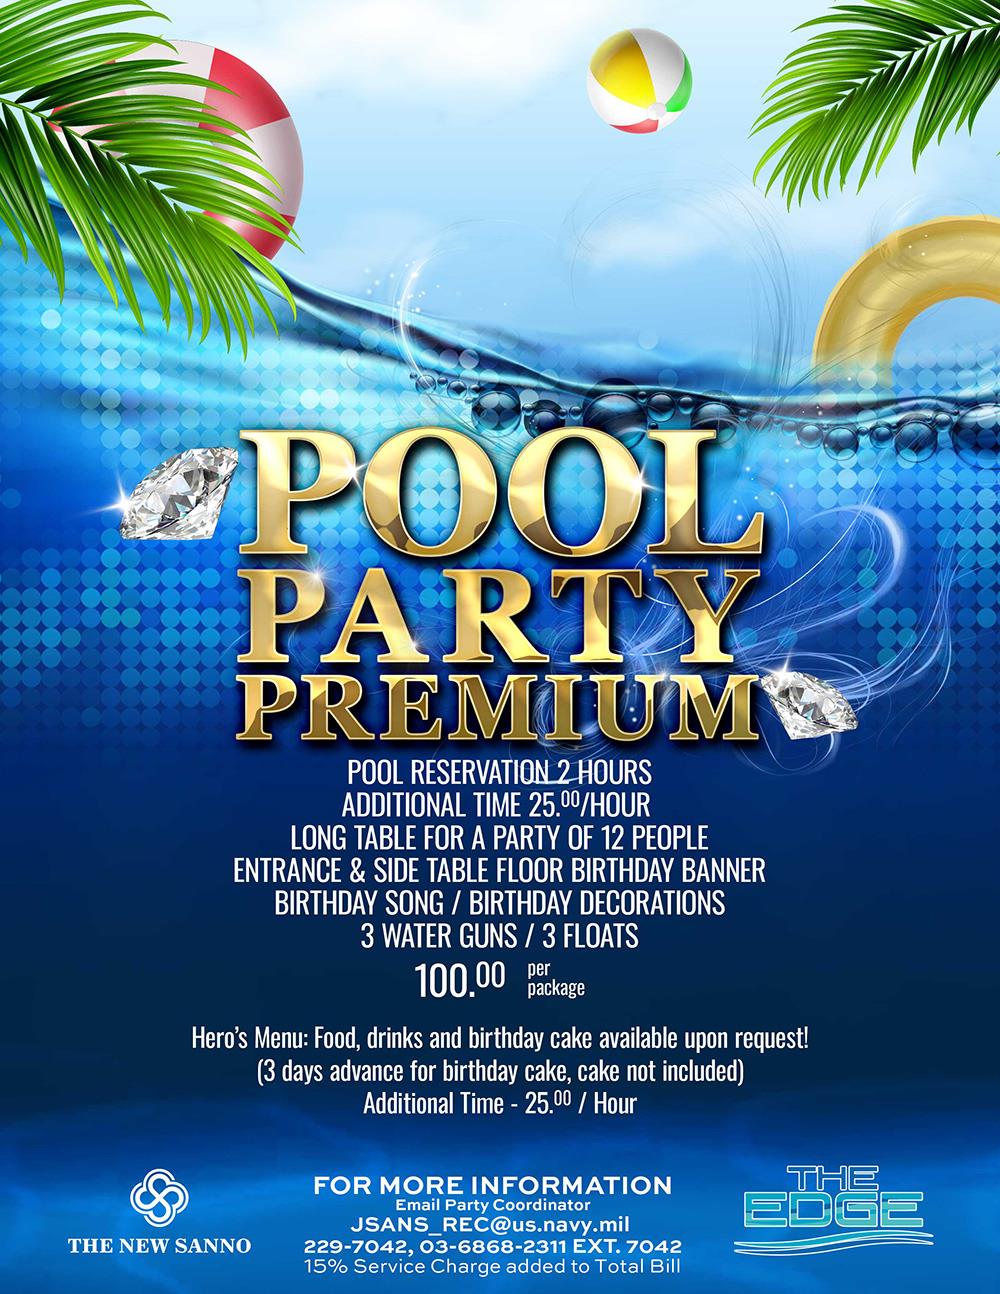 Pool Party Premium Flyer